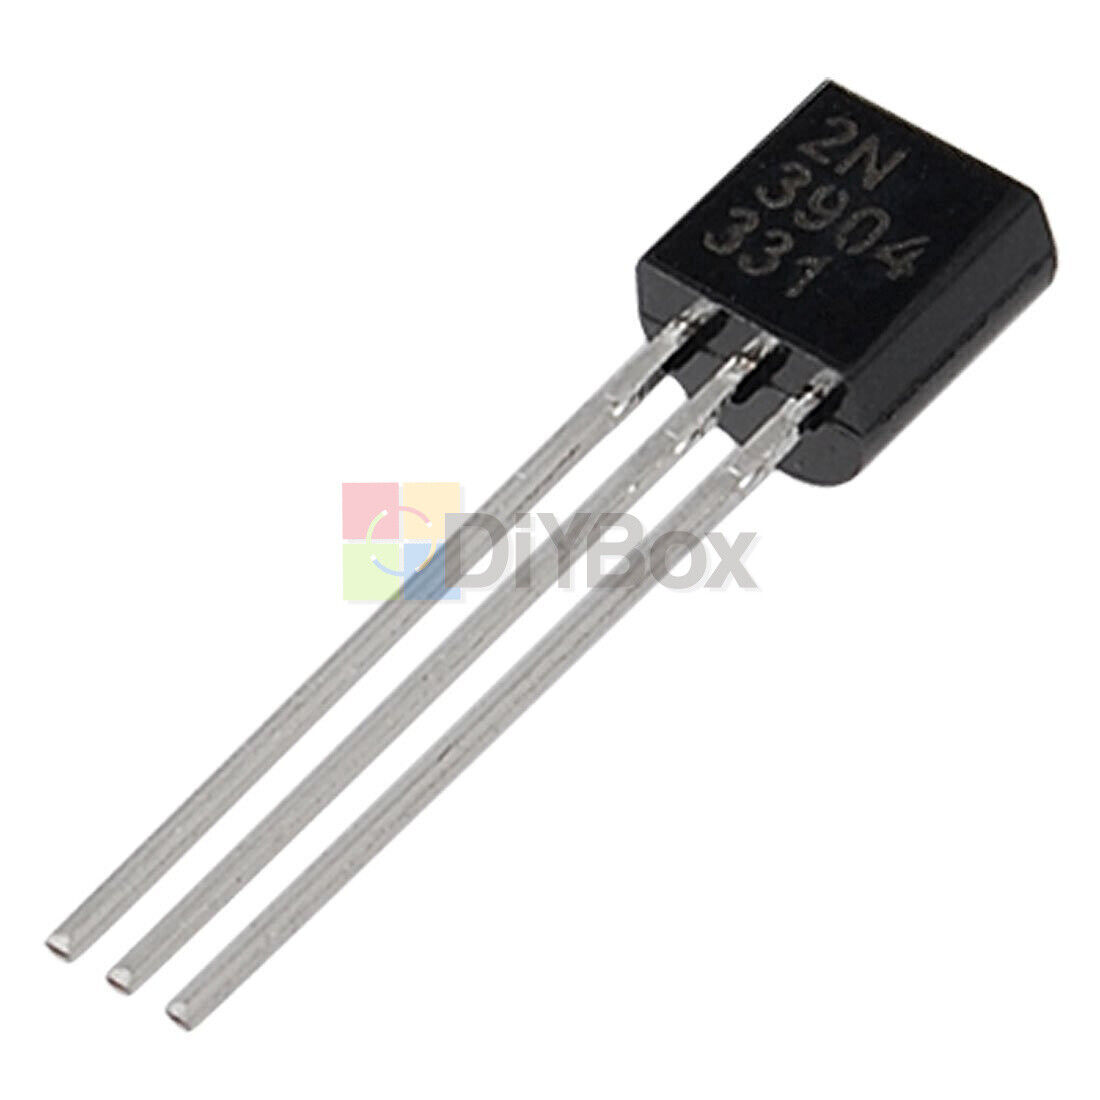 1000Pcs 2N3904 TO-92 NPN Transistor BJT General Purpose Transistor